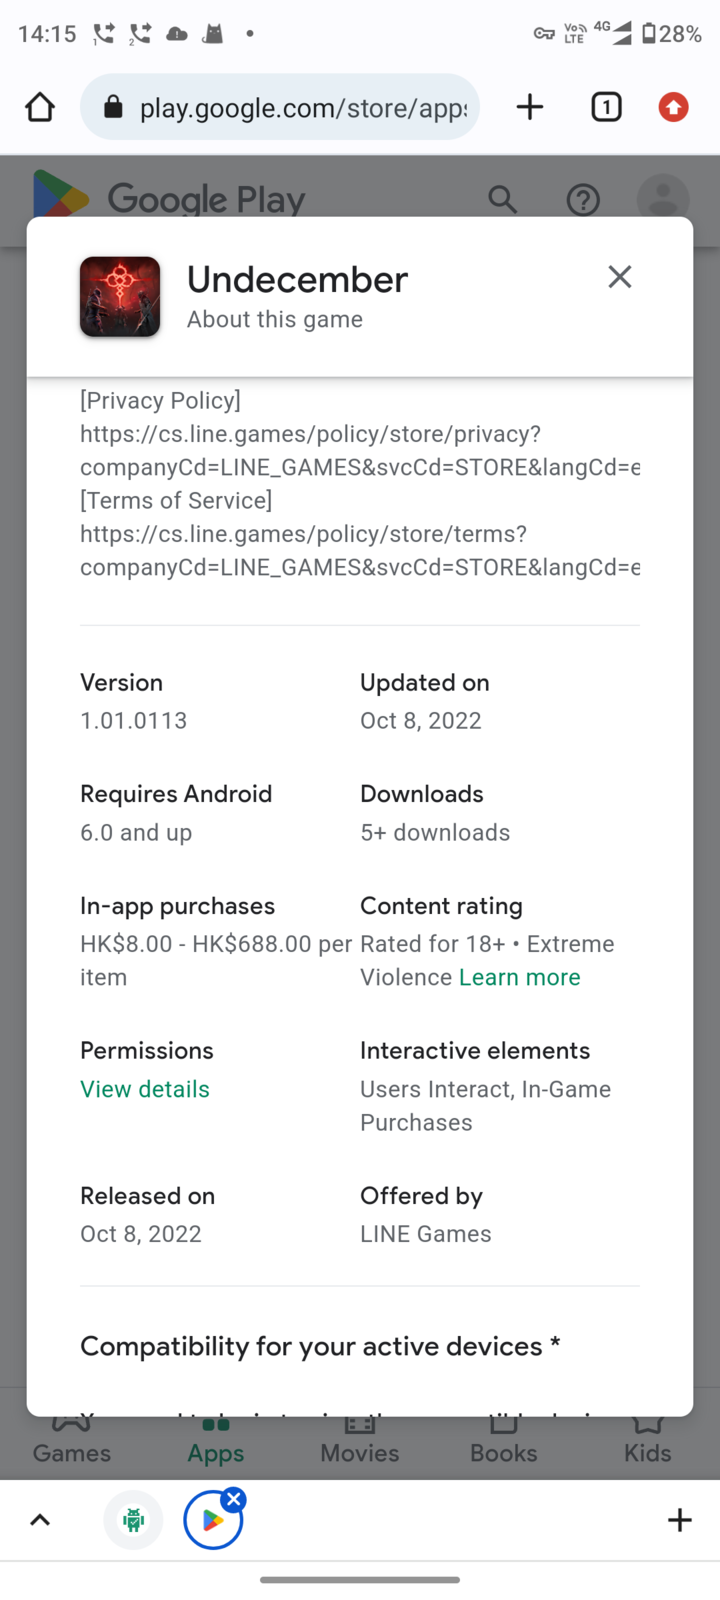 Tải Undecember Mod APK 1.09.0306 miễn phí cho Android iOS